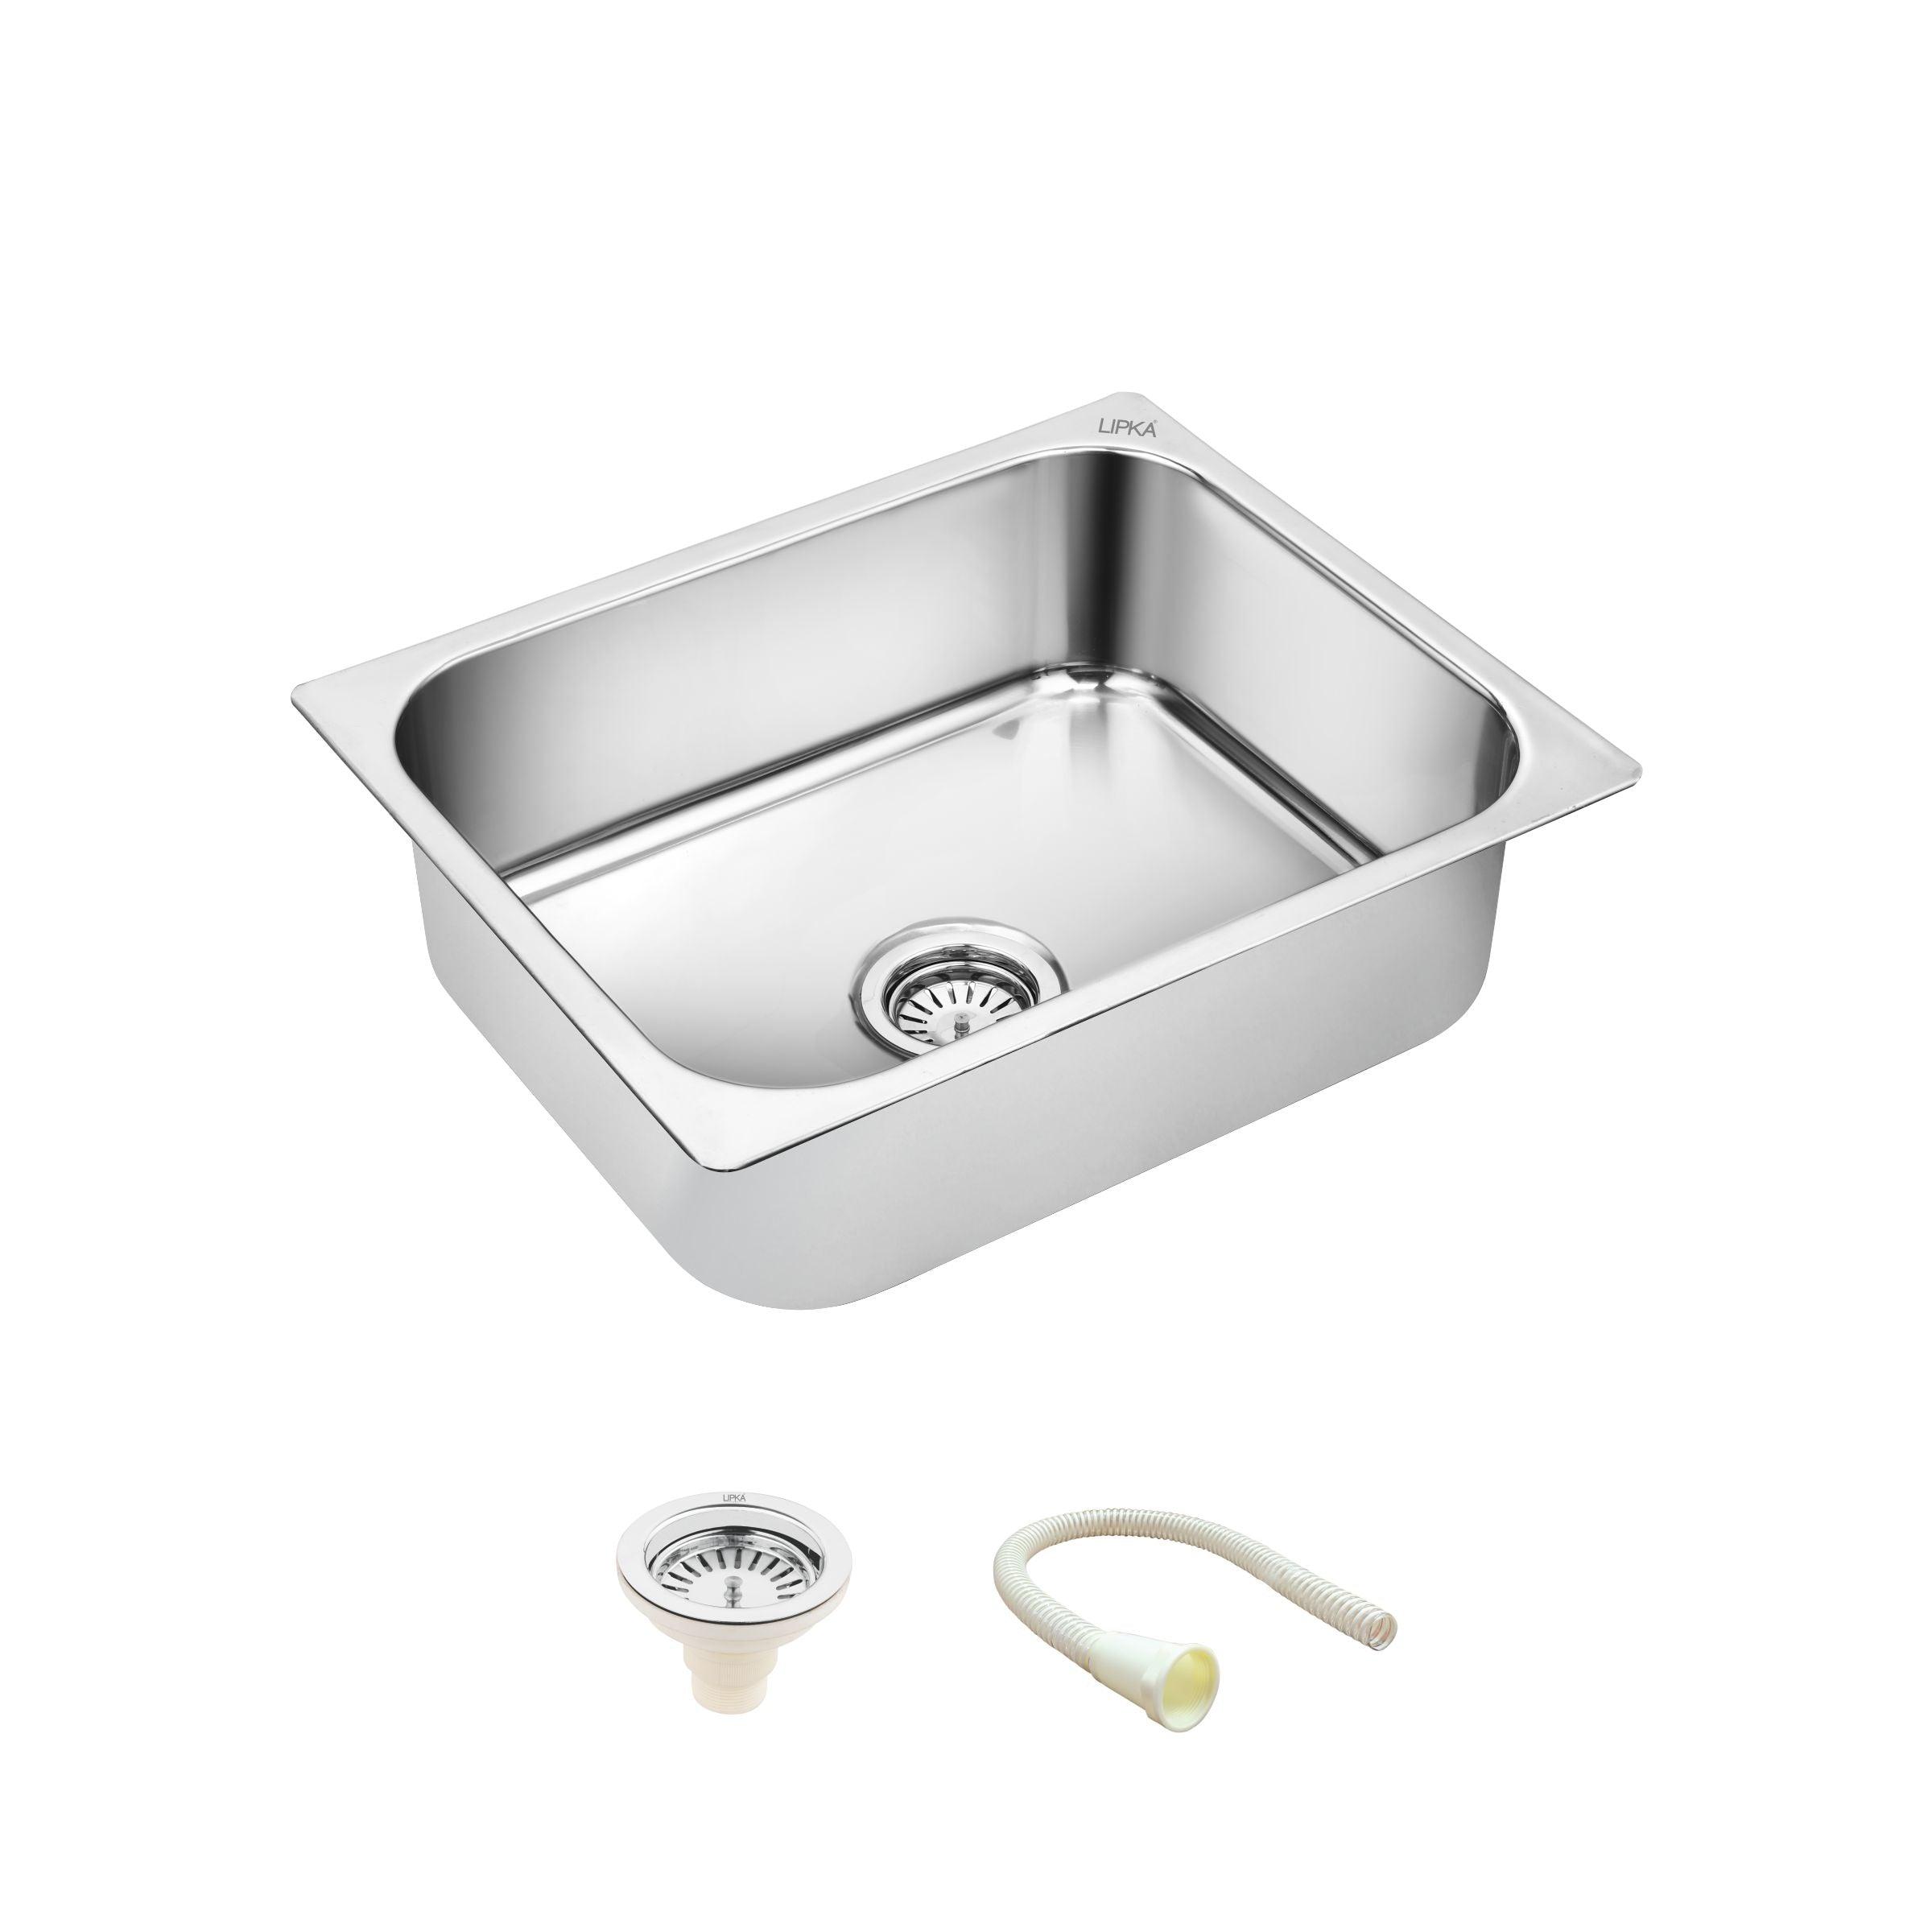 Square Single Bowl Kitchen Sink (15 x 12 x 6 Inches) - LIPKA - Lipka Home